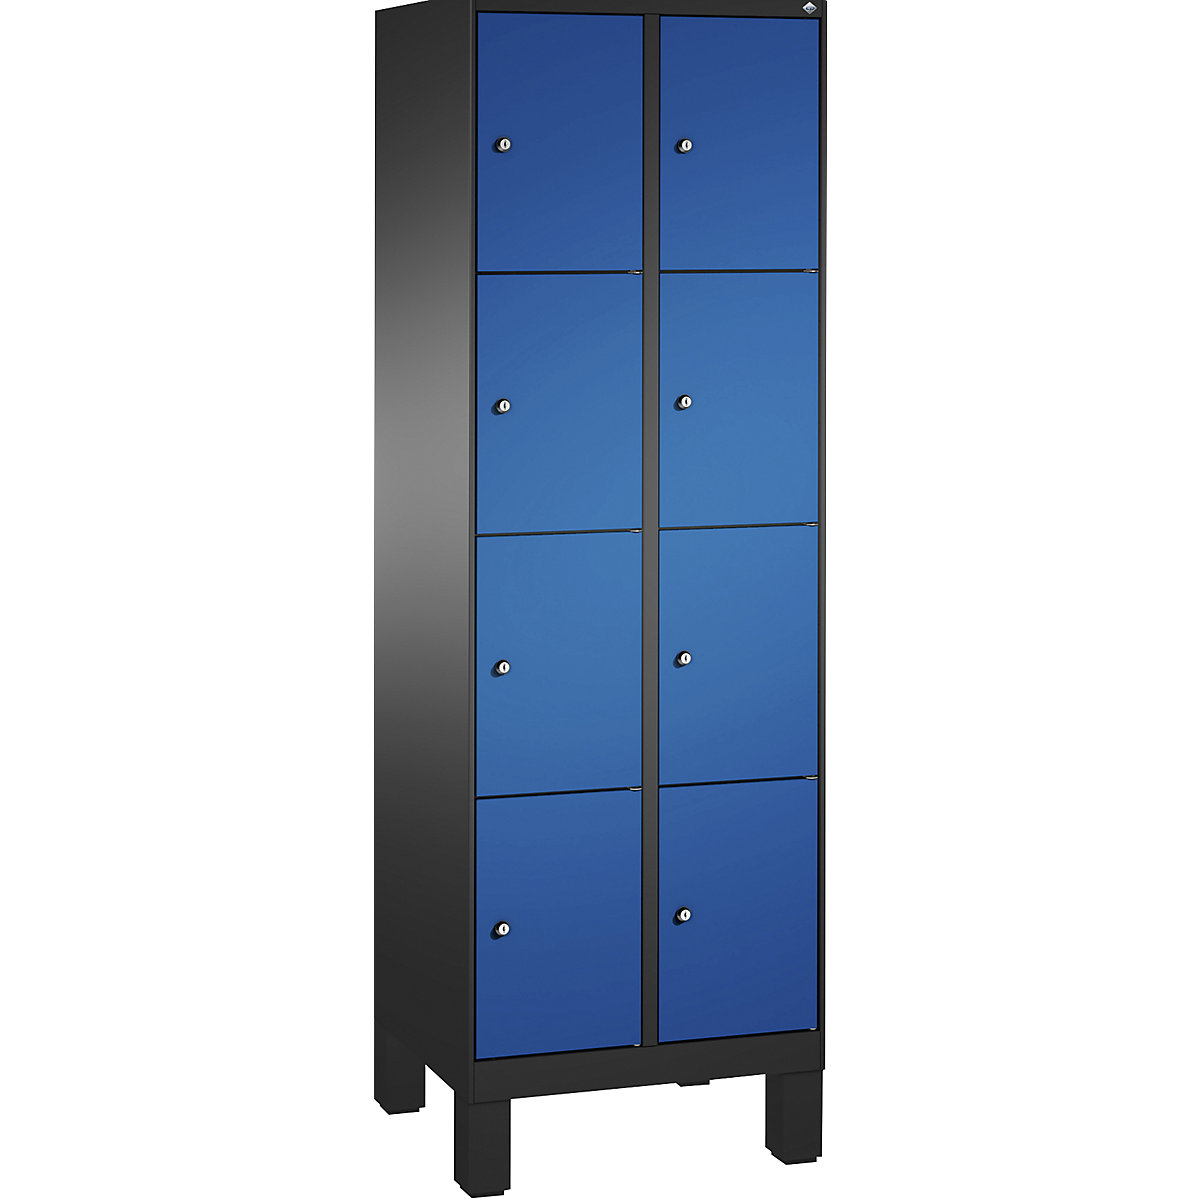 Armoire à casiers sur pieds EVOLO – C+P, 2 compartiments, 4 casiers chacun, largeur compartiments 300 mm, gris noir / bleu gentiane-17